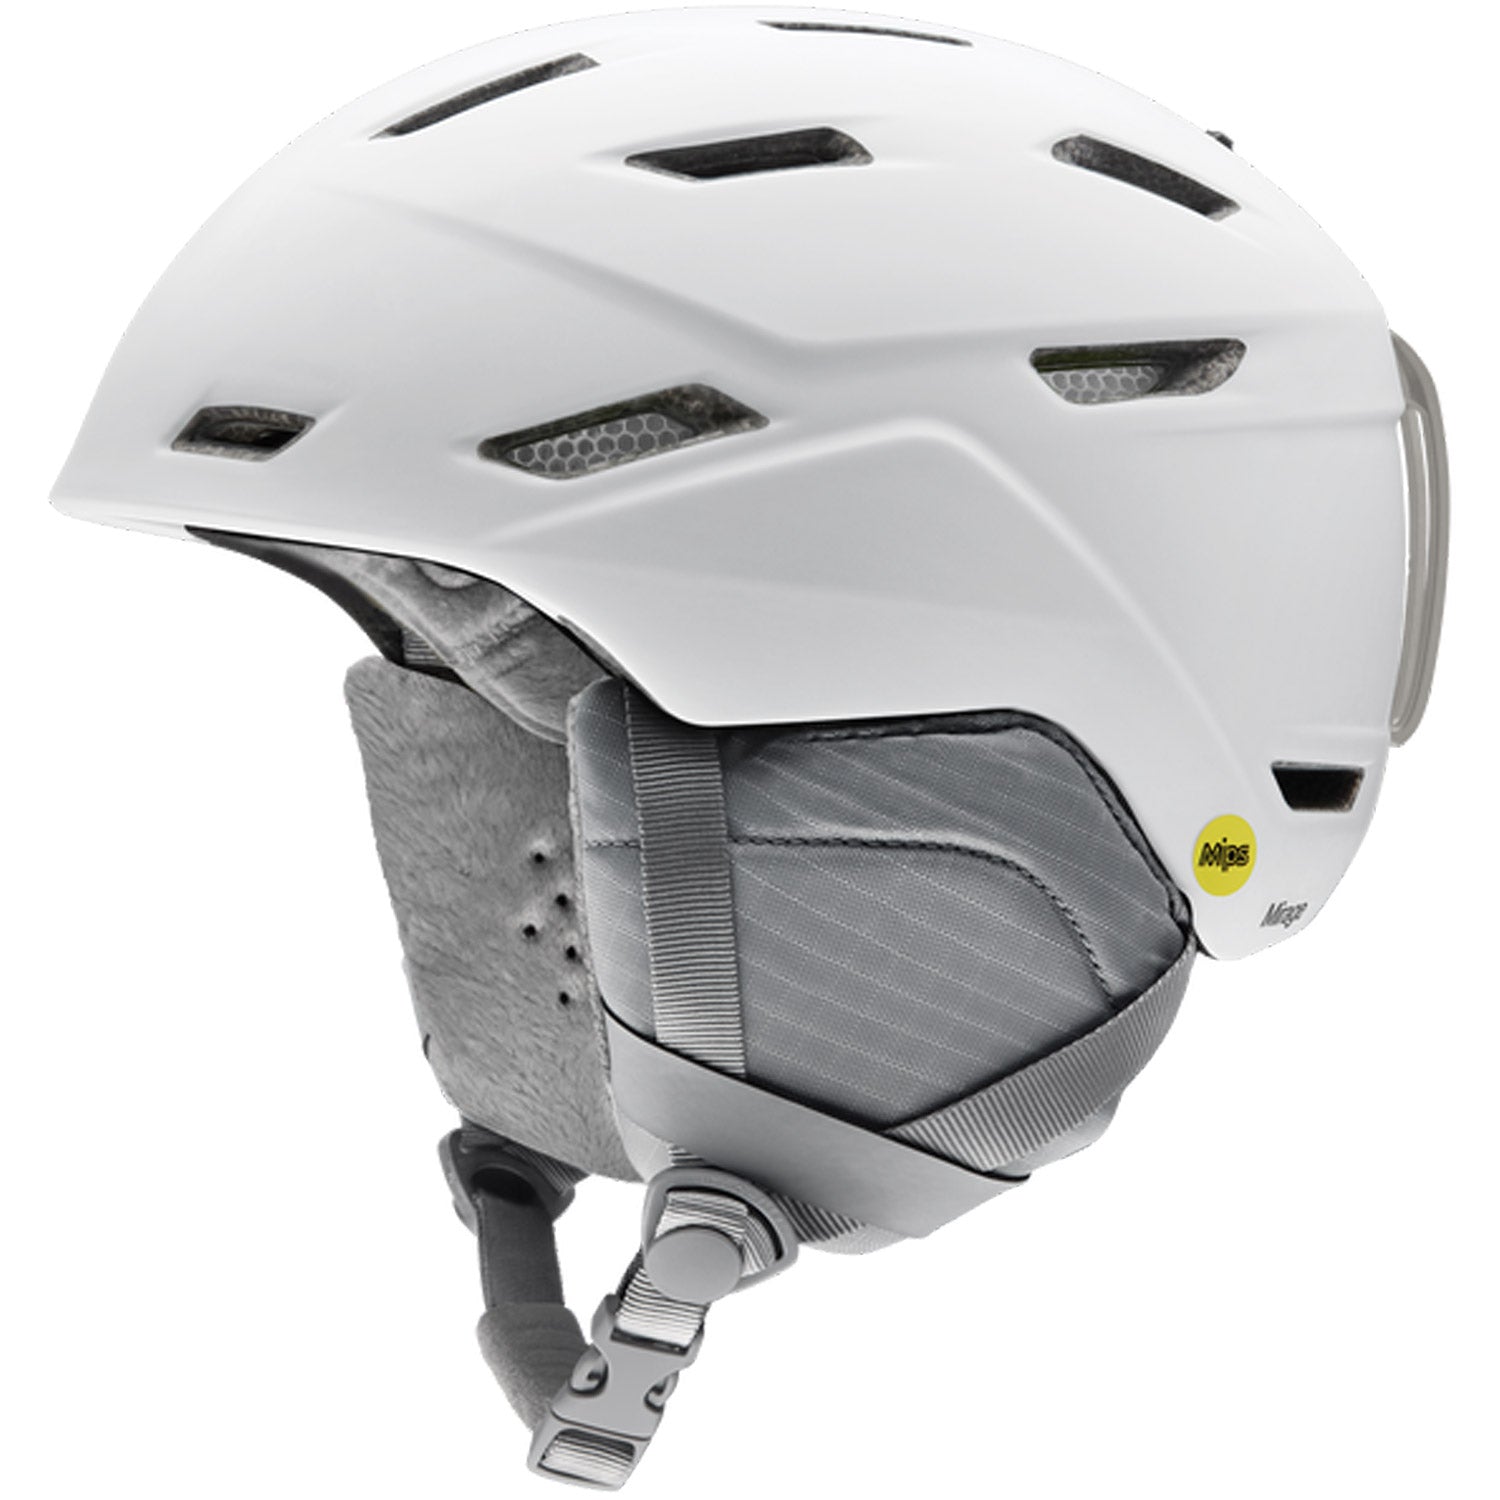 Mirage MIPS Snow Helmet